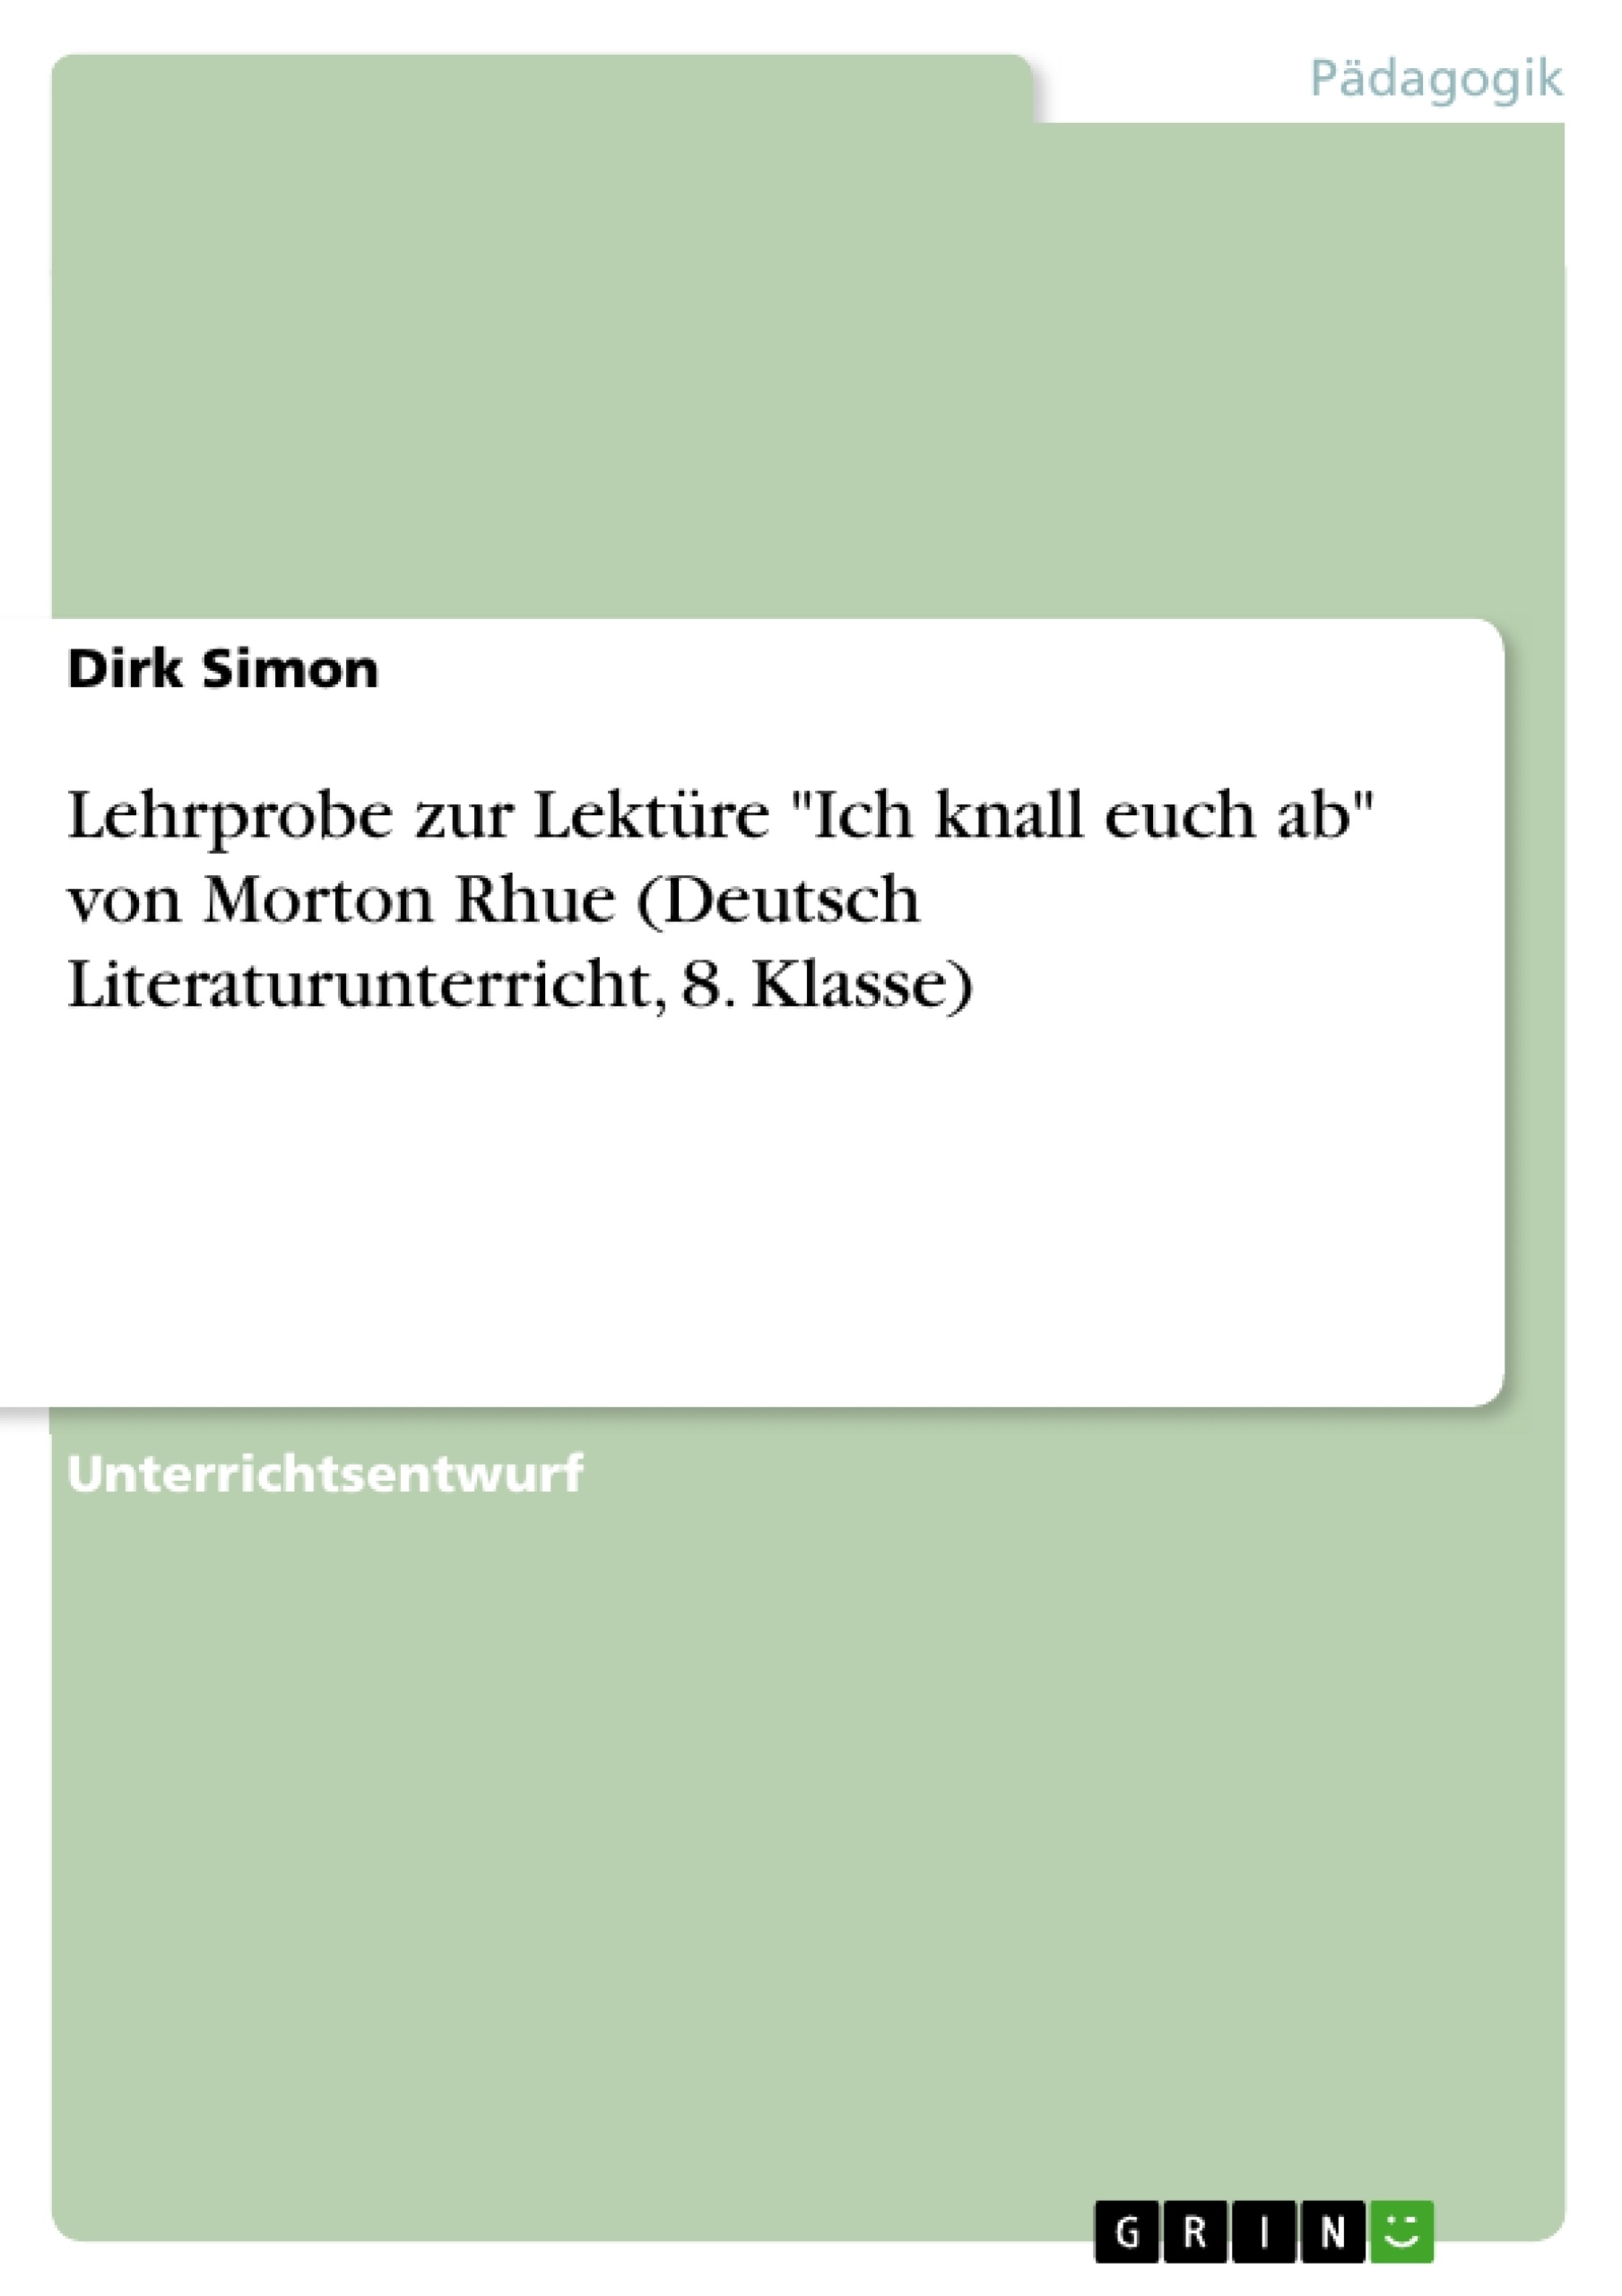 Titre: Lehrprobe zur Lektüre "Ich knall euch ab" von Morton Rhue (Deutsch Literaturunterricht, 8. Klasse)